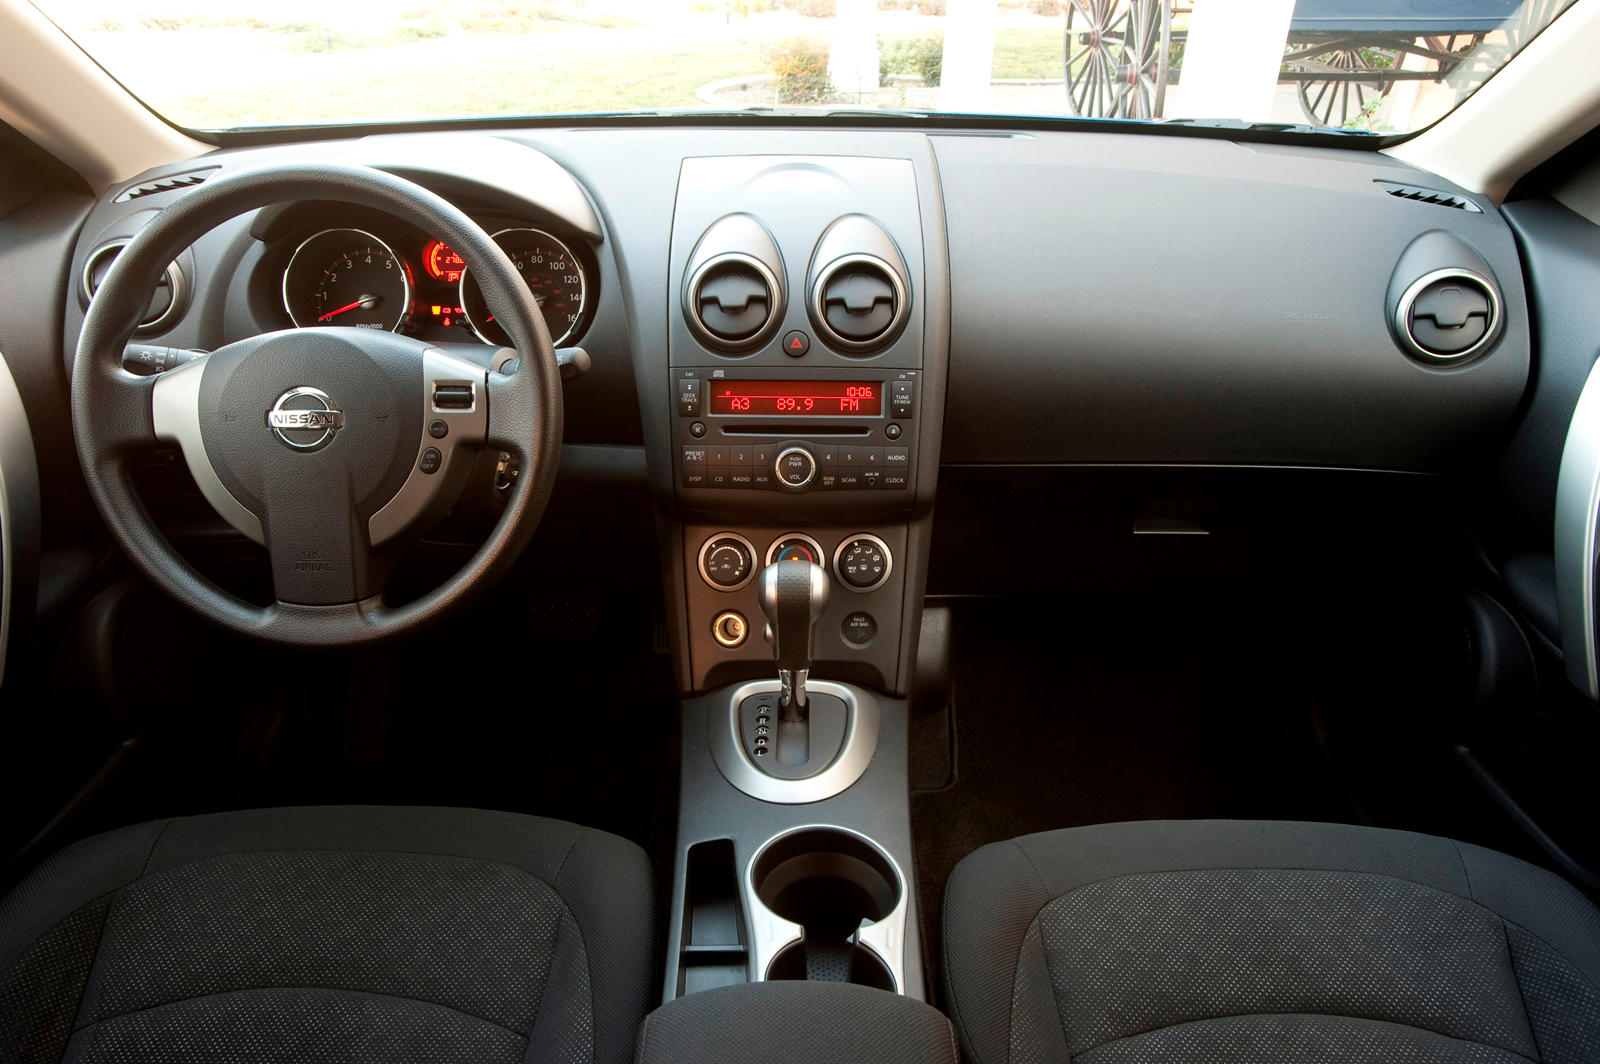 2009 Nissan Rogue Interior Photos | CarBuzz